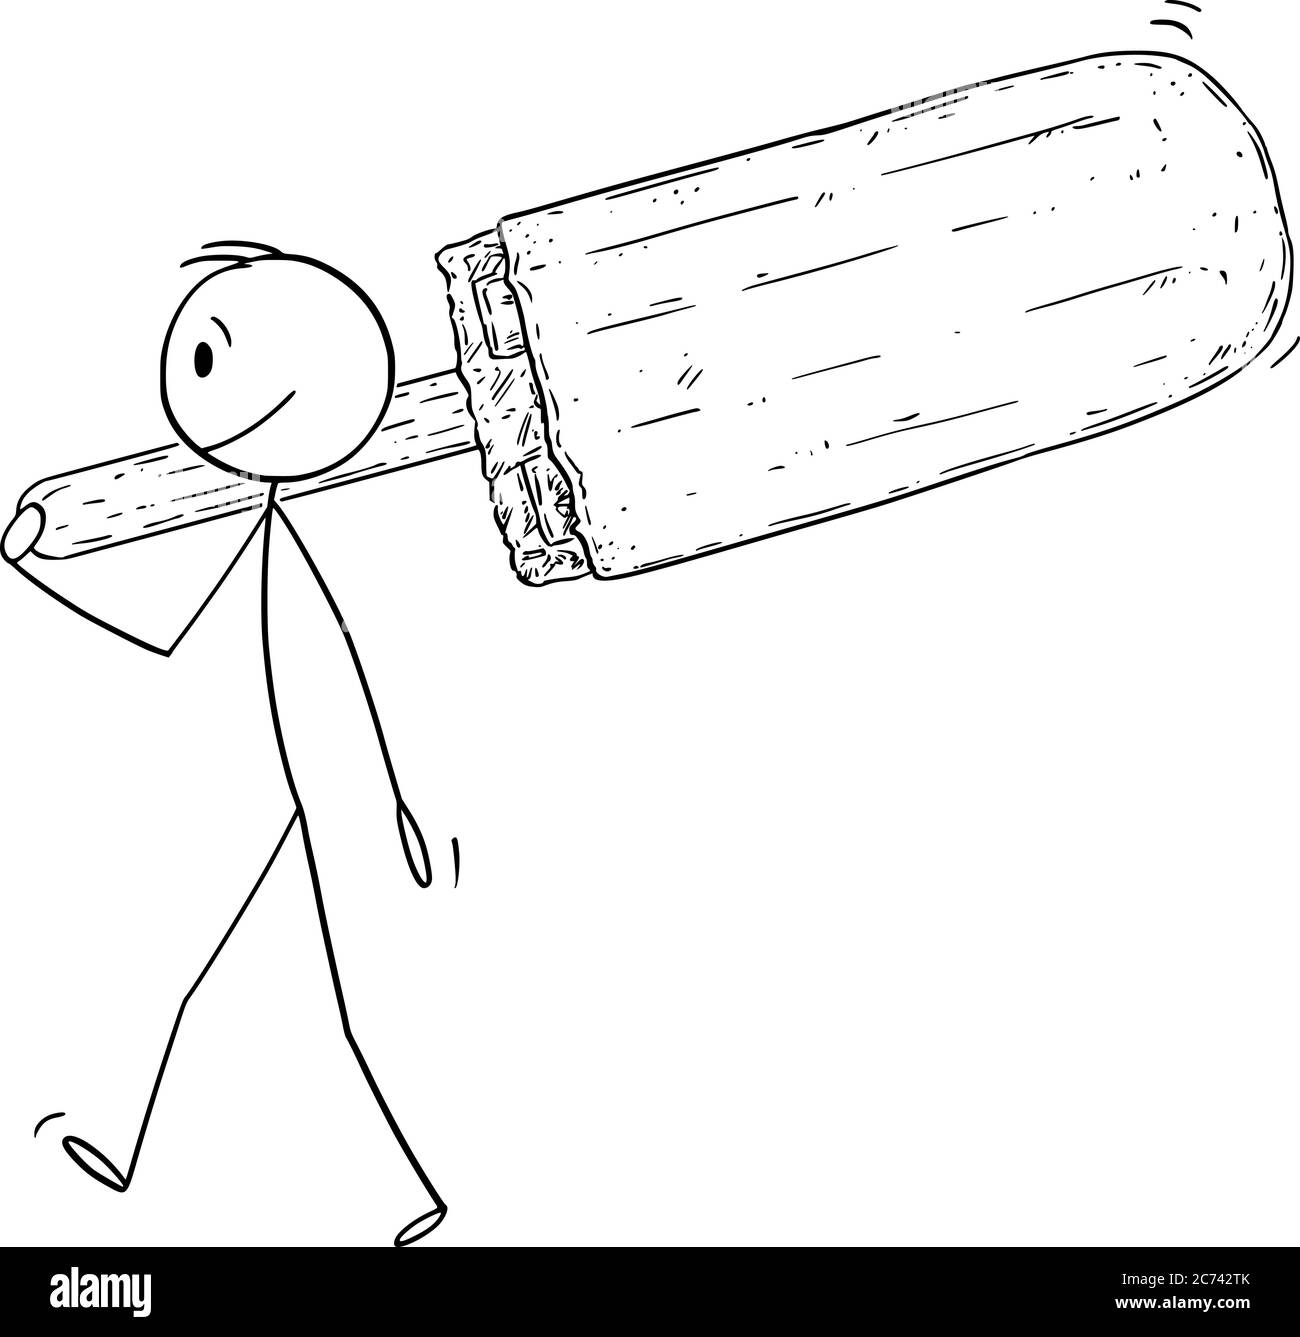 Disegno vettoriale di figura di bastone di cartoon illustrazione concettuale di piccolo uomo che tiene e porta grande popsicle o ghiaccio lolly. Illustrazione Vettoriale